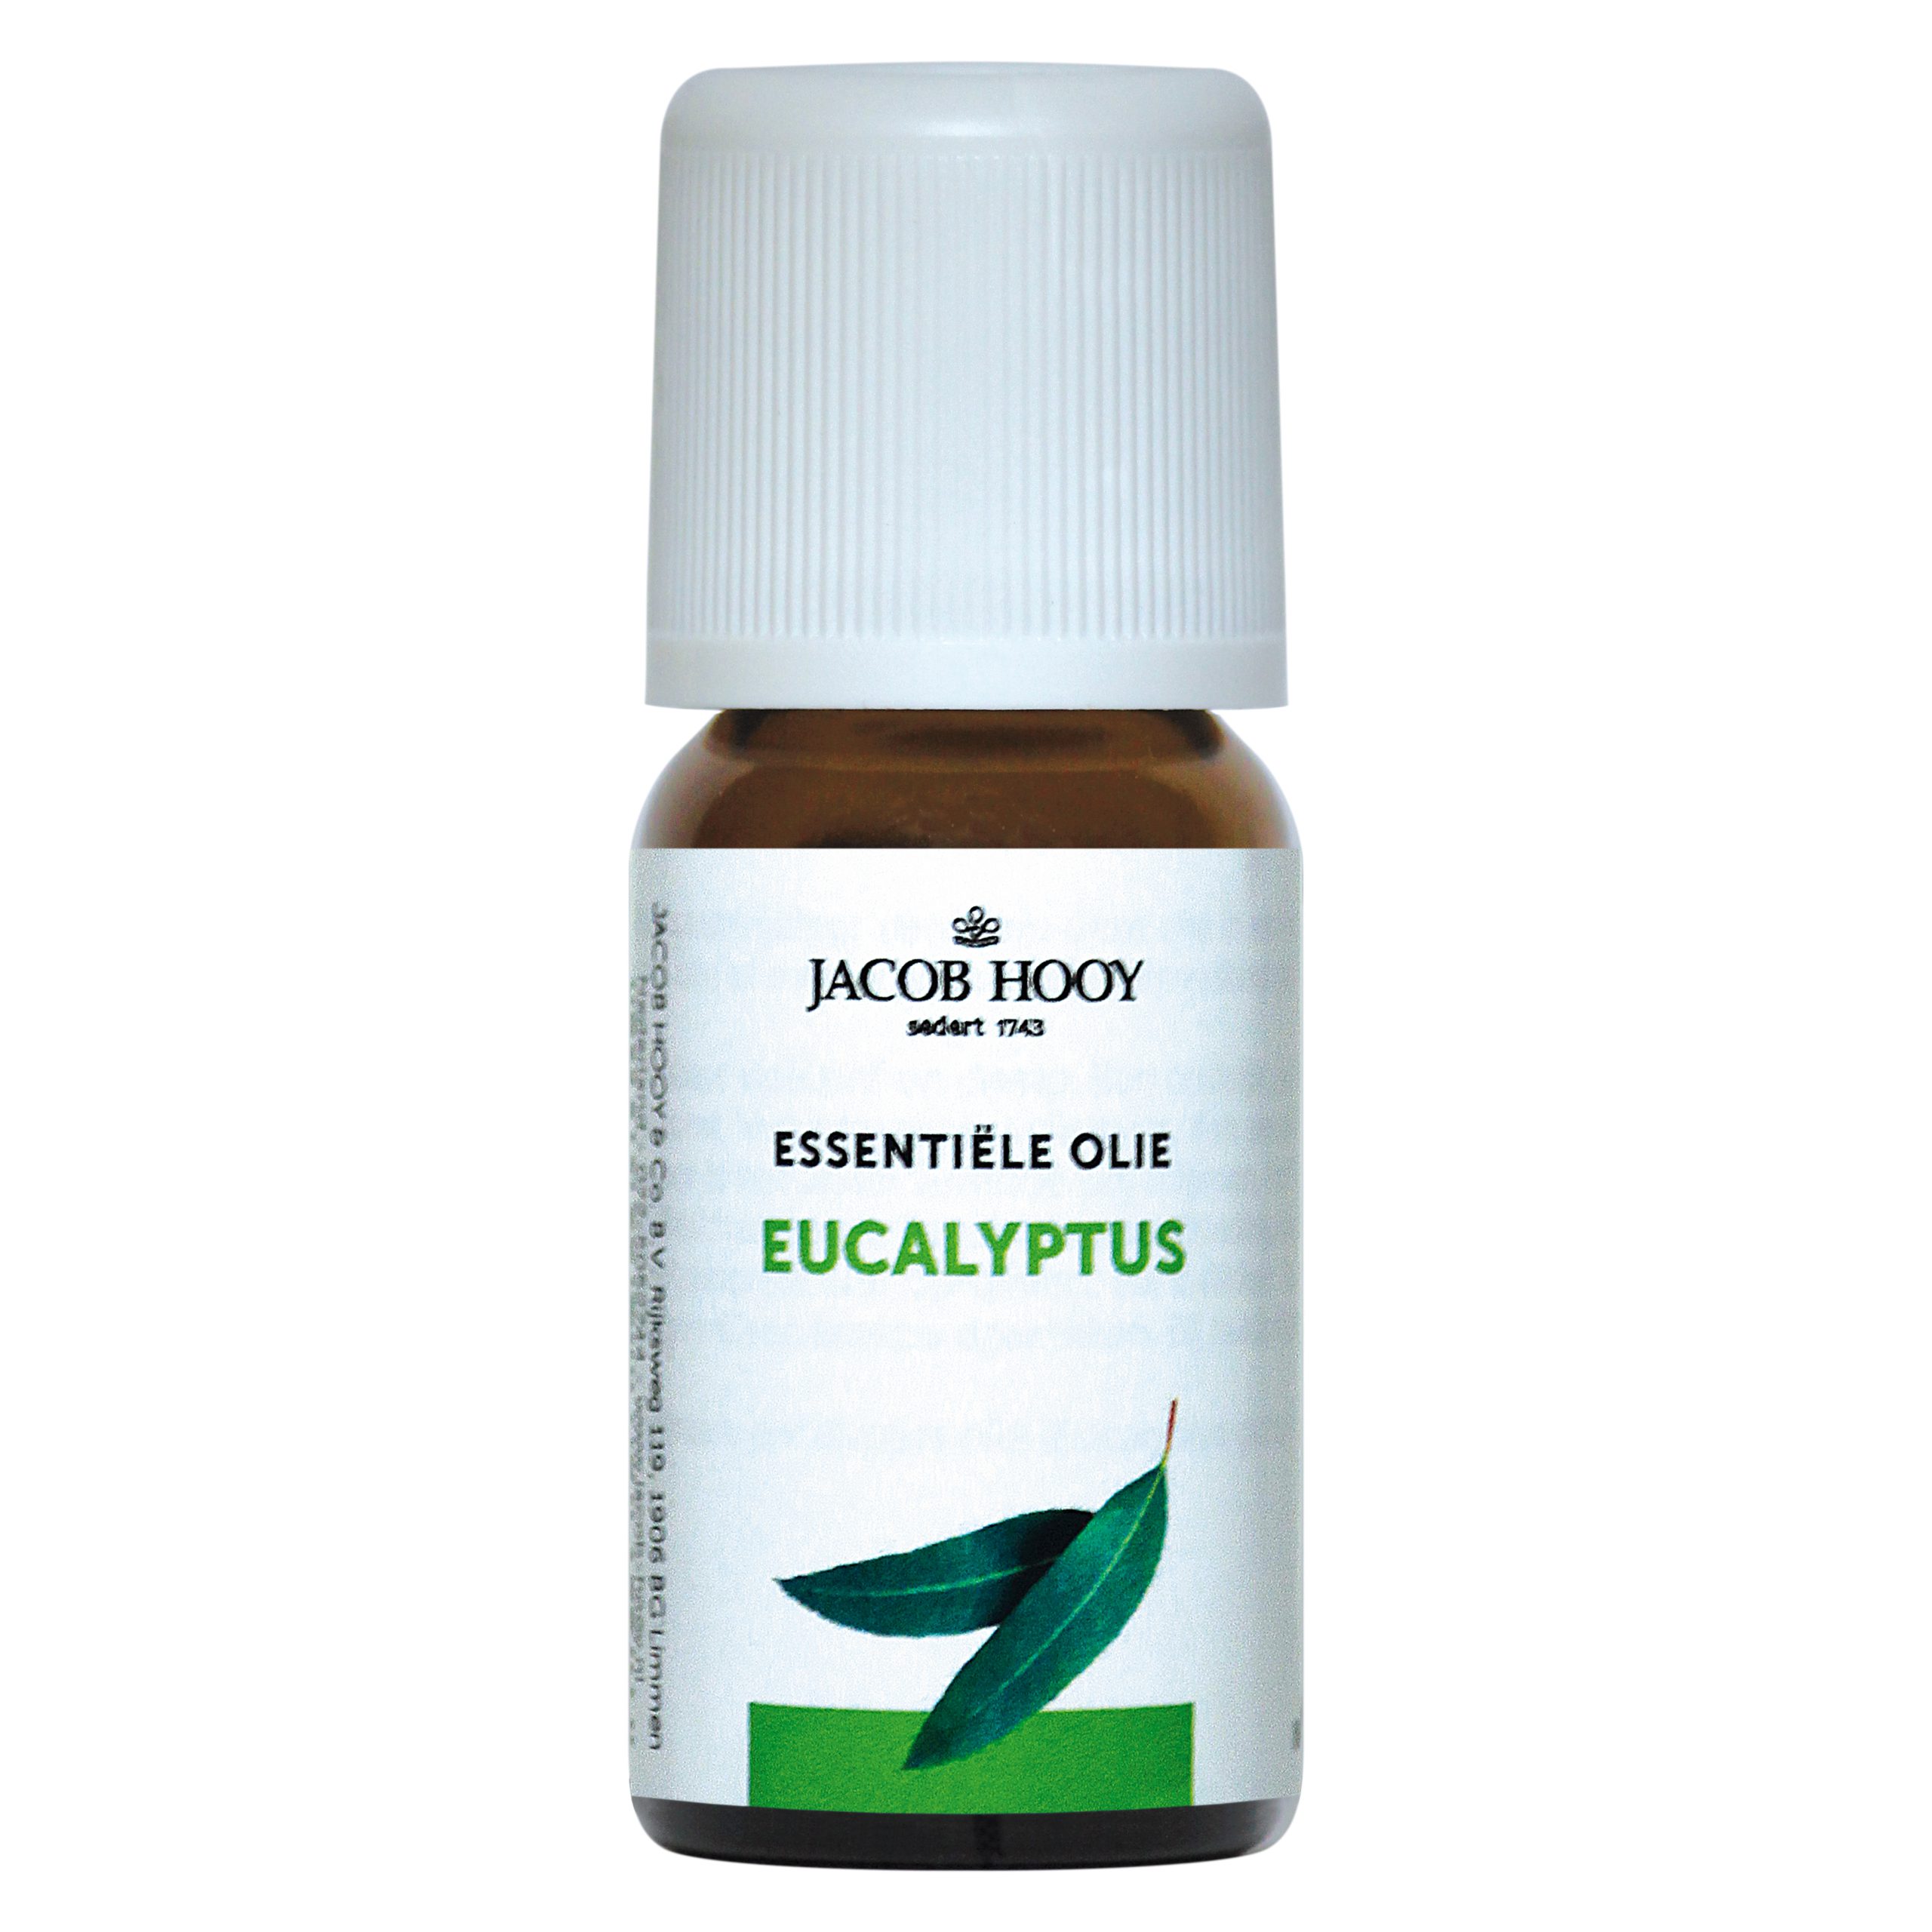 Essentiële olie Eucalyptus 10 ml